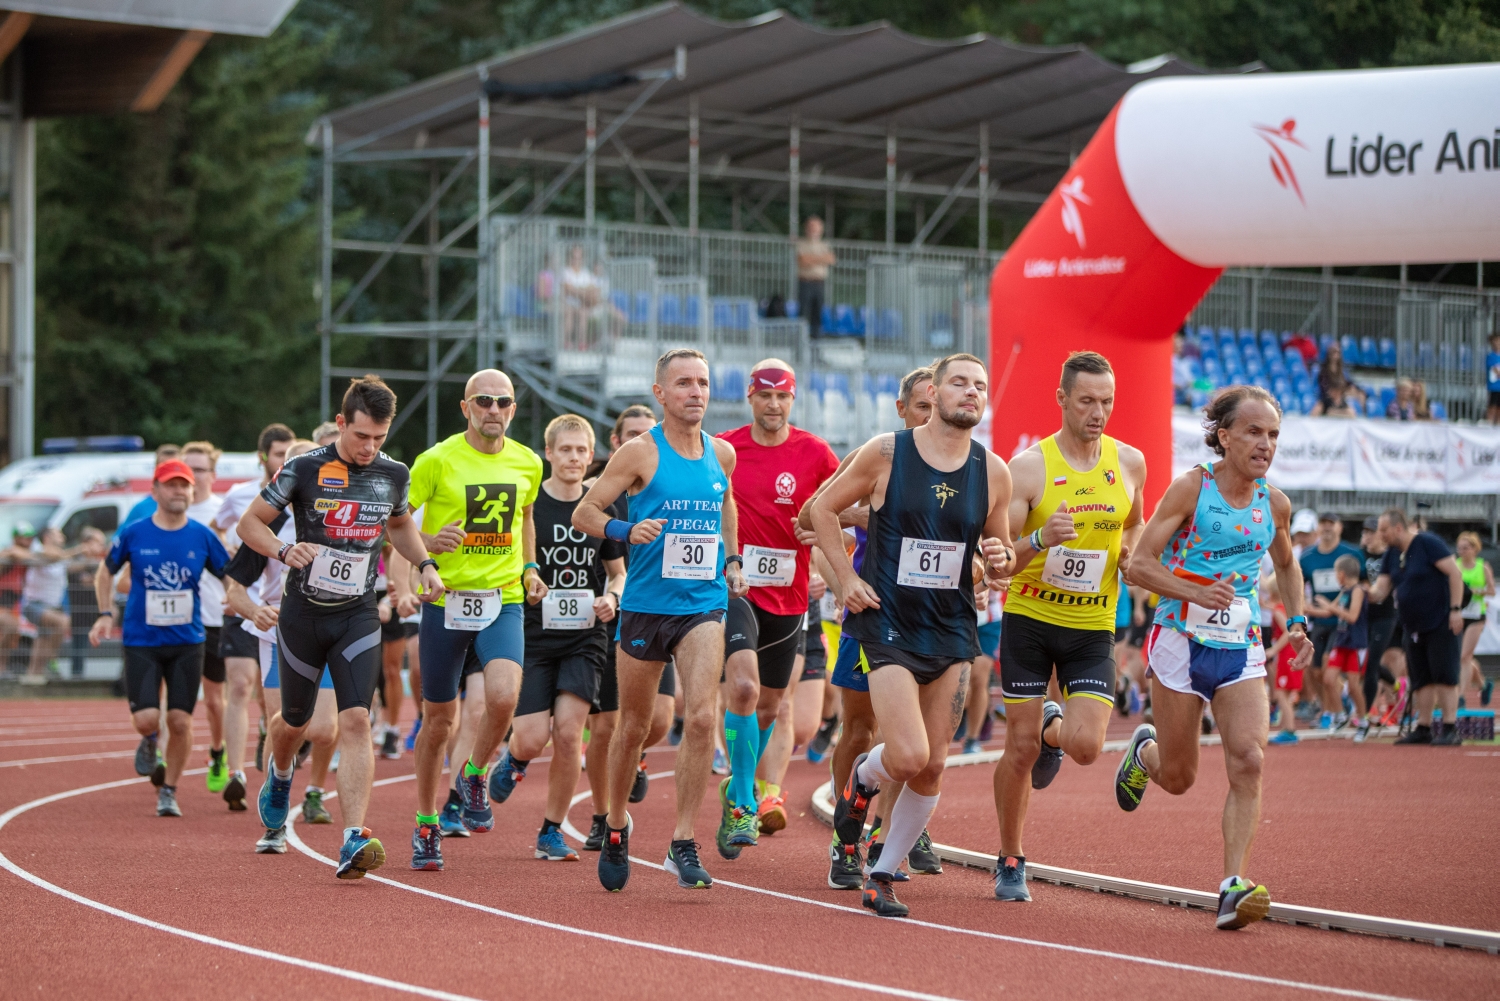 Poznanskie Bieg Otwarcia Igrzysk 2021 Biegacze na bieżni